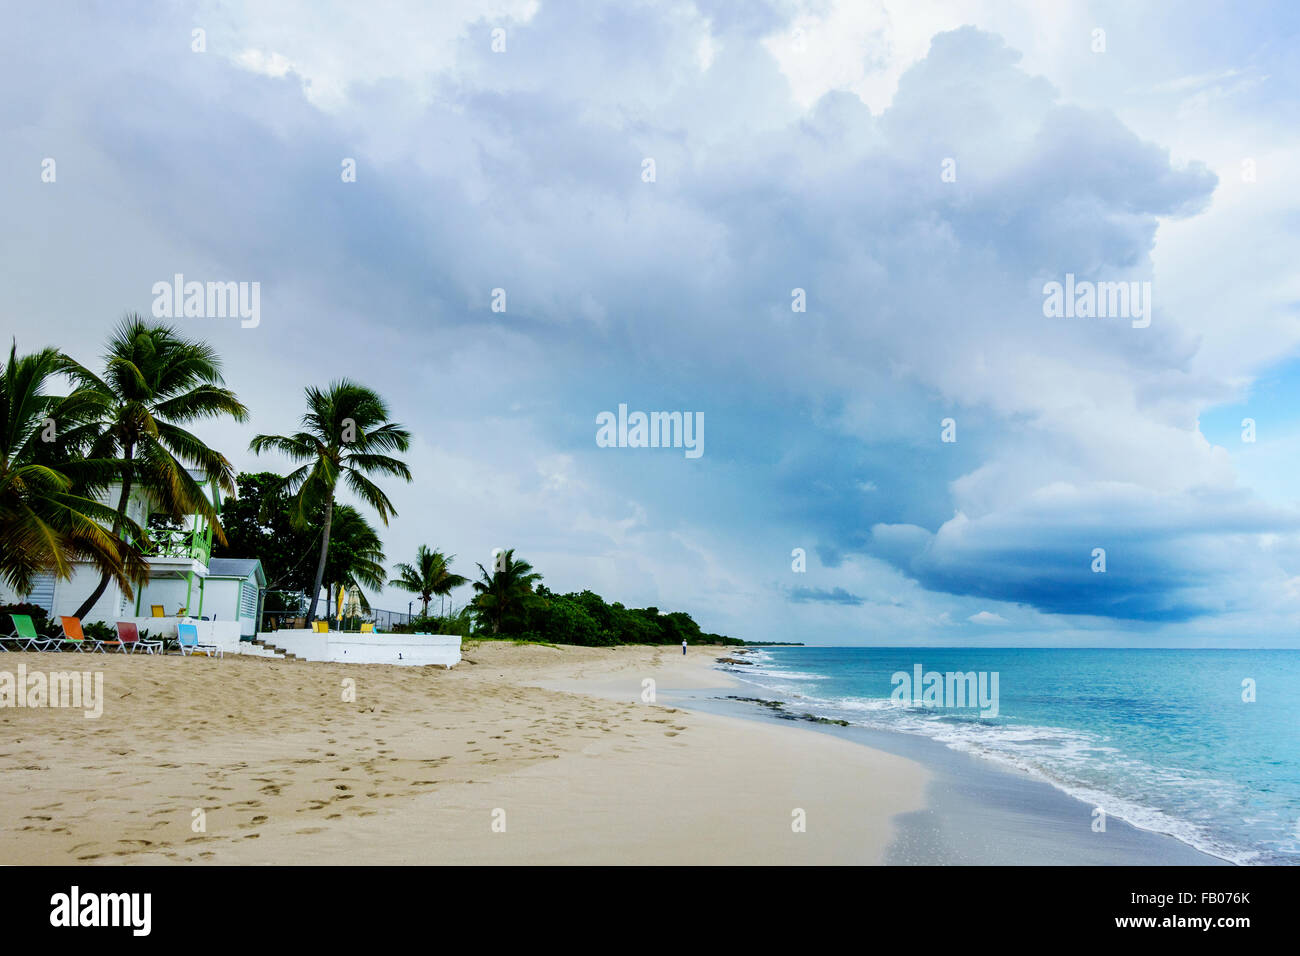 Un anziano uomo visto in lontananza beachcombs sull isola di St. Croix, U.S. Isole Vergini. USVI, U.S.V.I. Cottage sul mare resort. Foto Stock